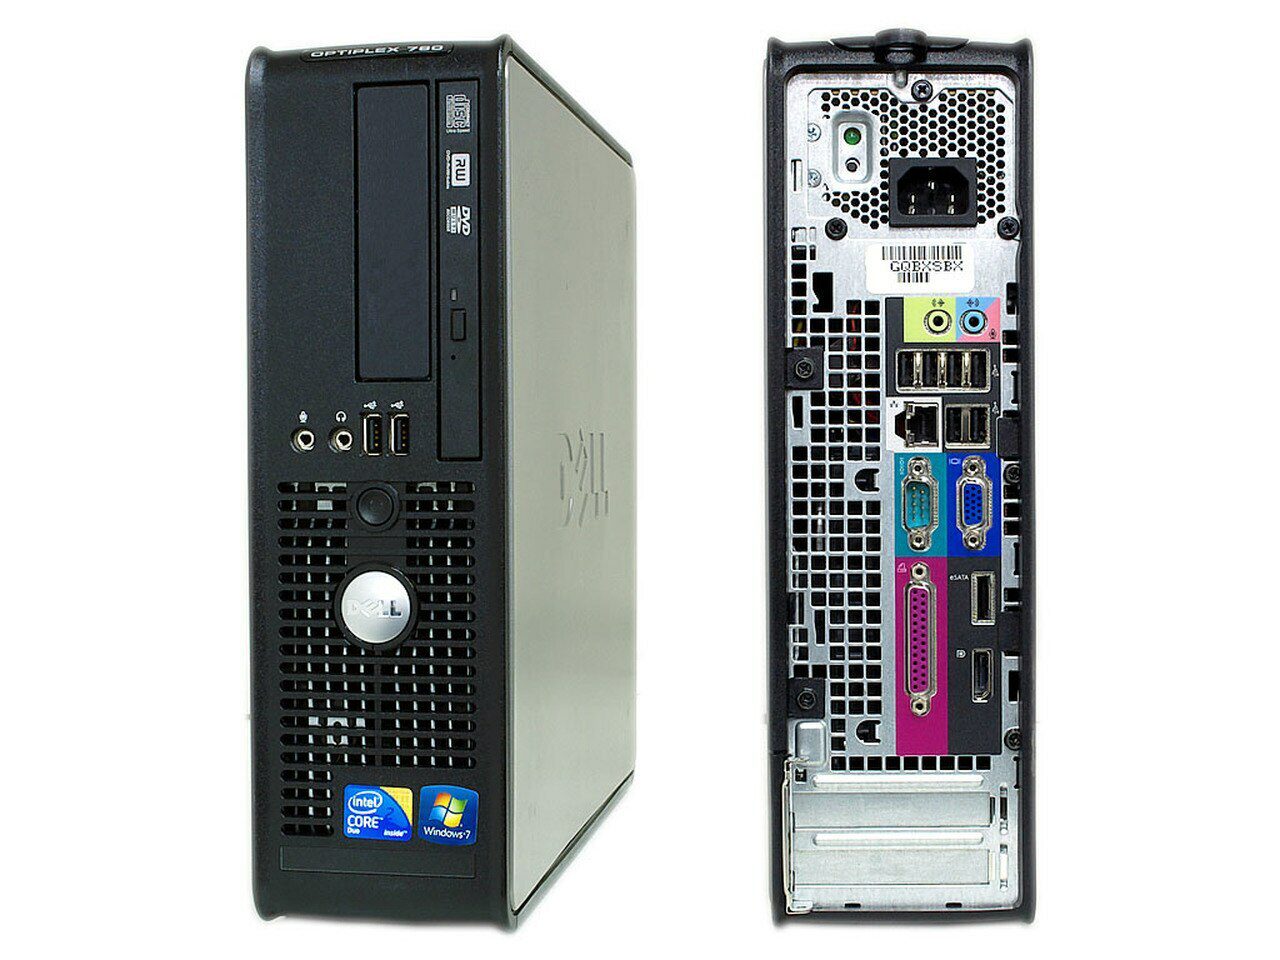 Dell OptiPlex 380 sff | Intel Core 2 Duo E7500 | 4Gb Ram | 500Gb Hard Disk | DVD+RW | Windows 10 |